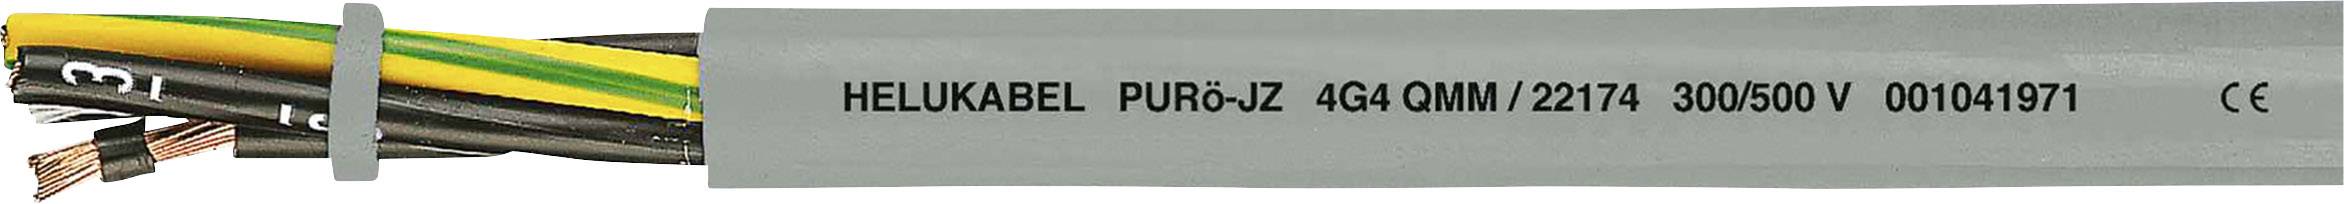 HELUKABEL PURö-JZ Steuerleitung 7 G 2.50 mm² Grau 22168-1000 1000 m